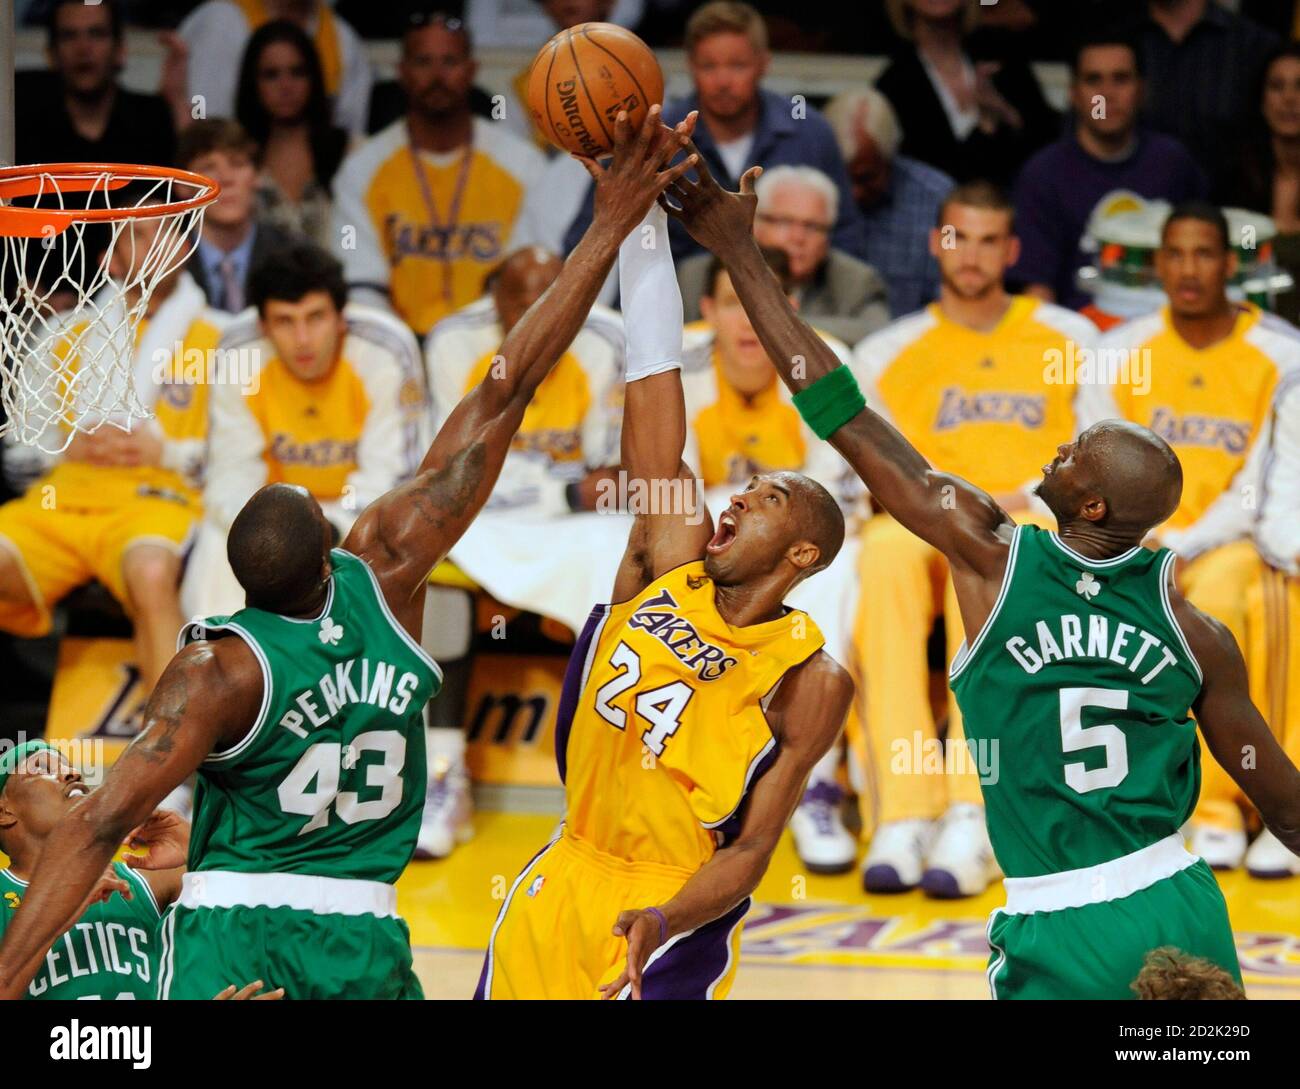 Celtics lakers vs Lakers vs.